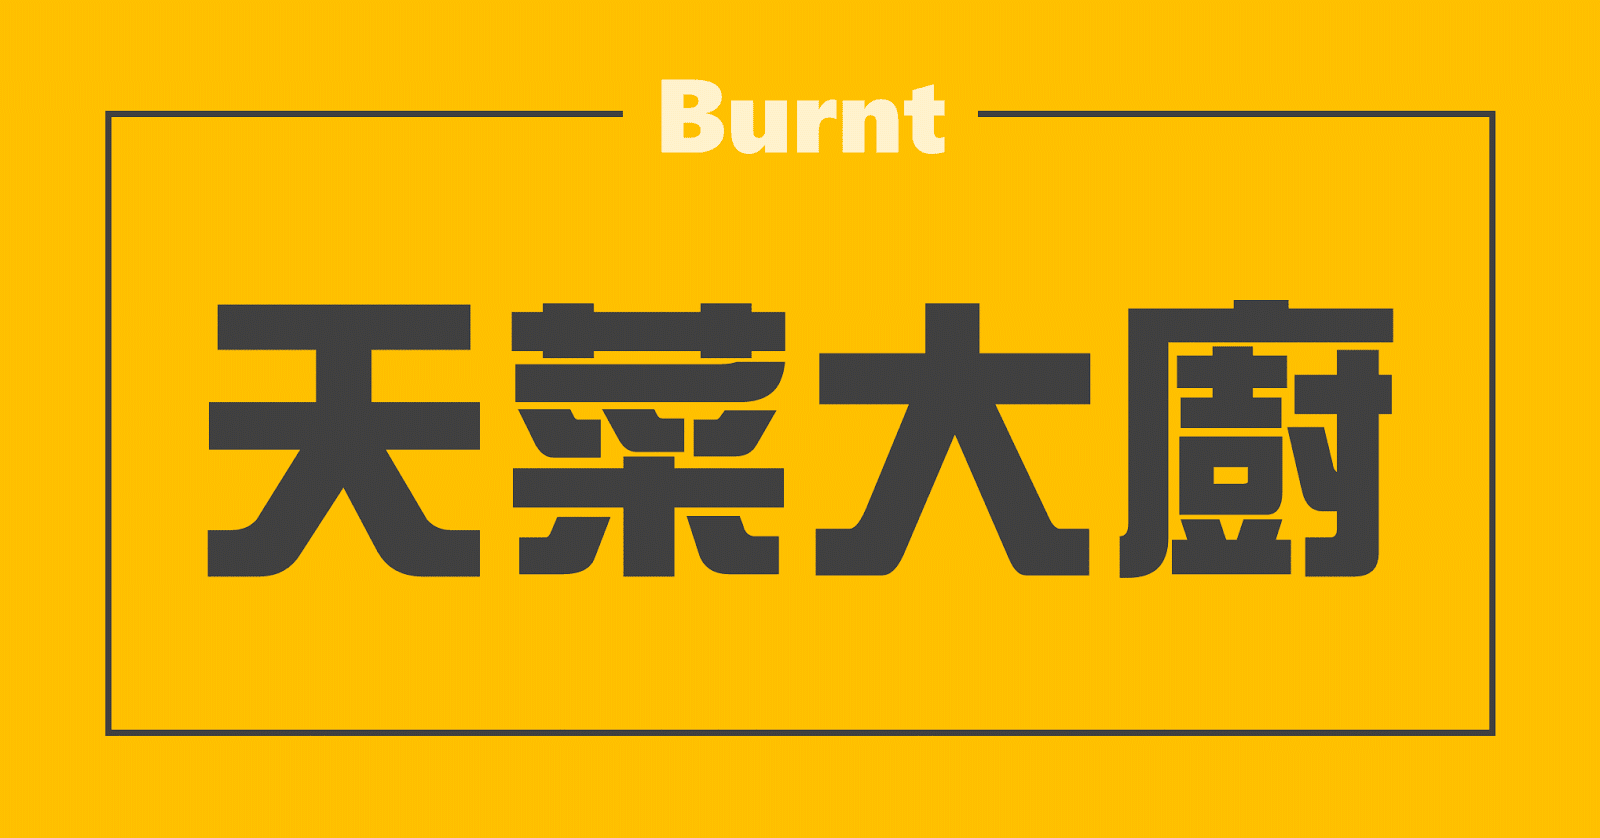 01_Burnt-Burnt